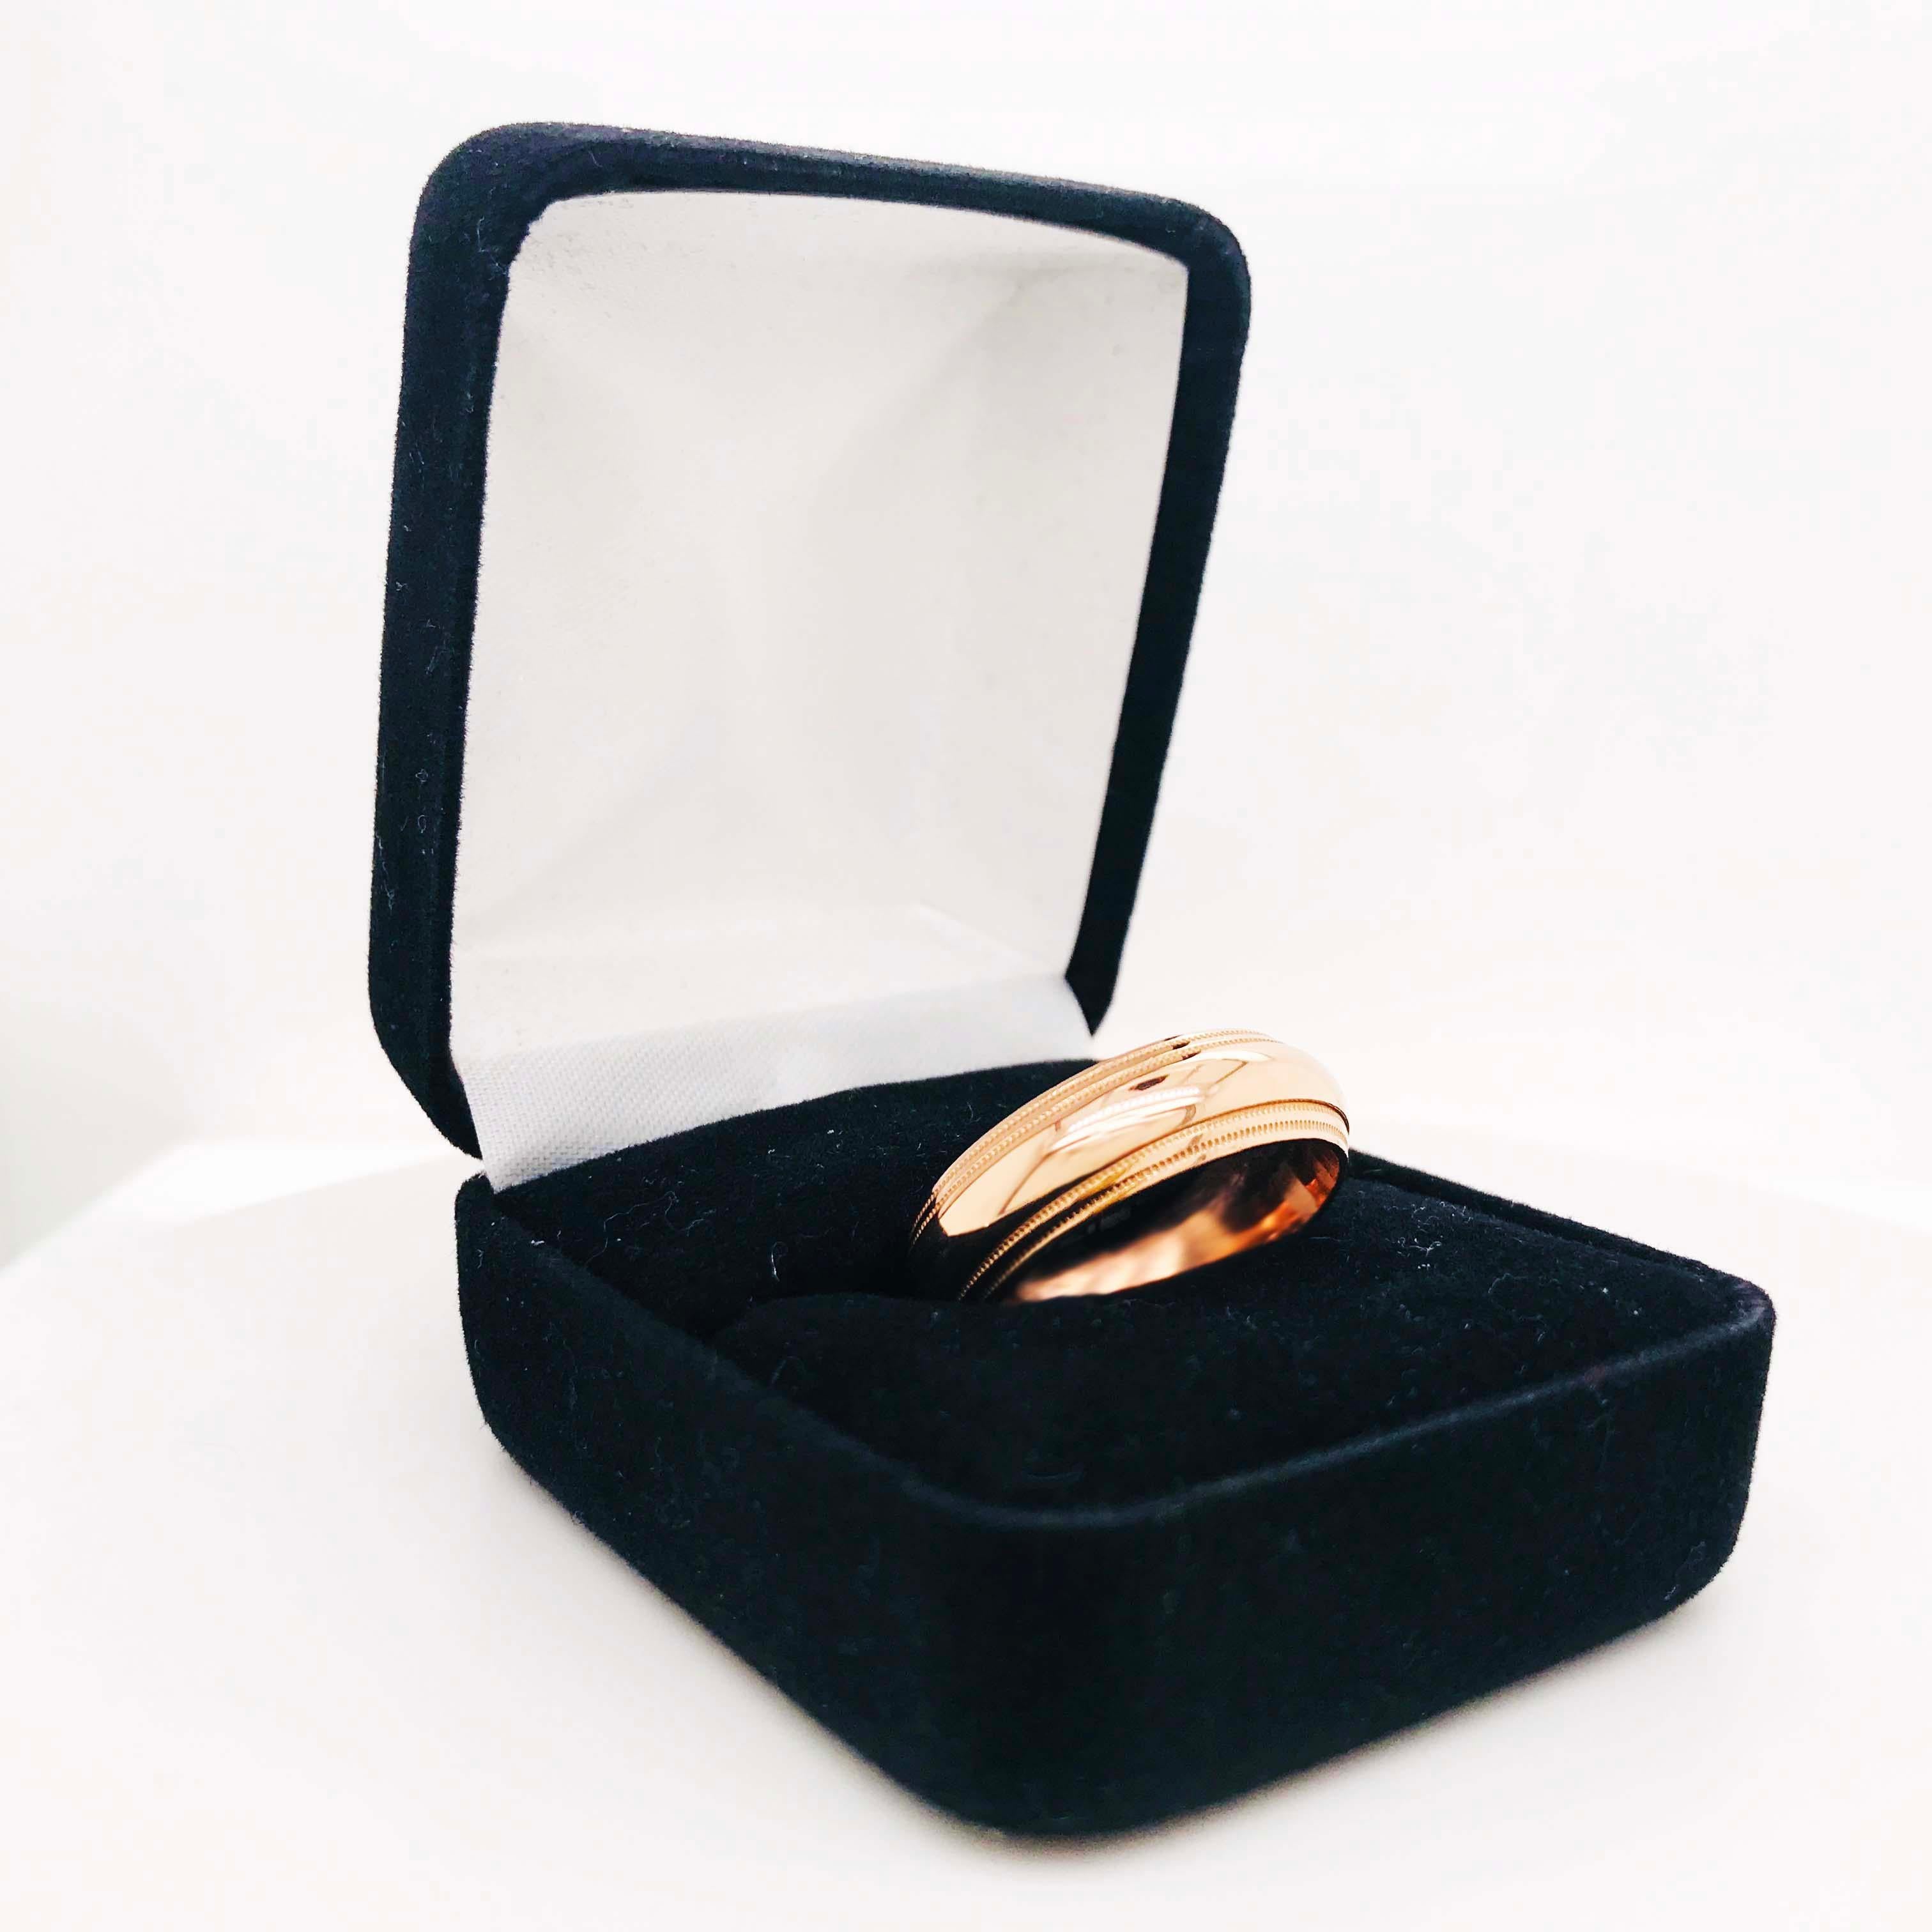 Cette bague personnalisée en or rose est un design unique avec une structure classique. L'anneau est de style incurvé (anneau demi-rond) avec un double motif perlé près des bords de l'anneau. L'anneau a une largeur de 6 1/2 mm et est fabriqué en or